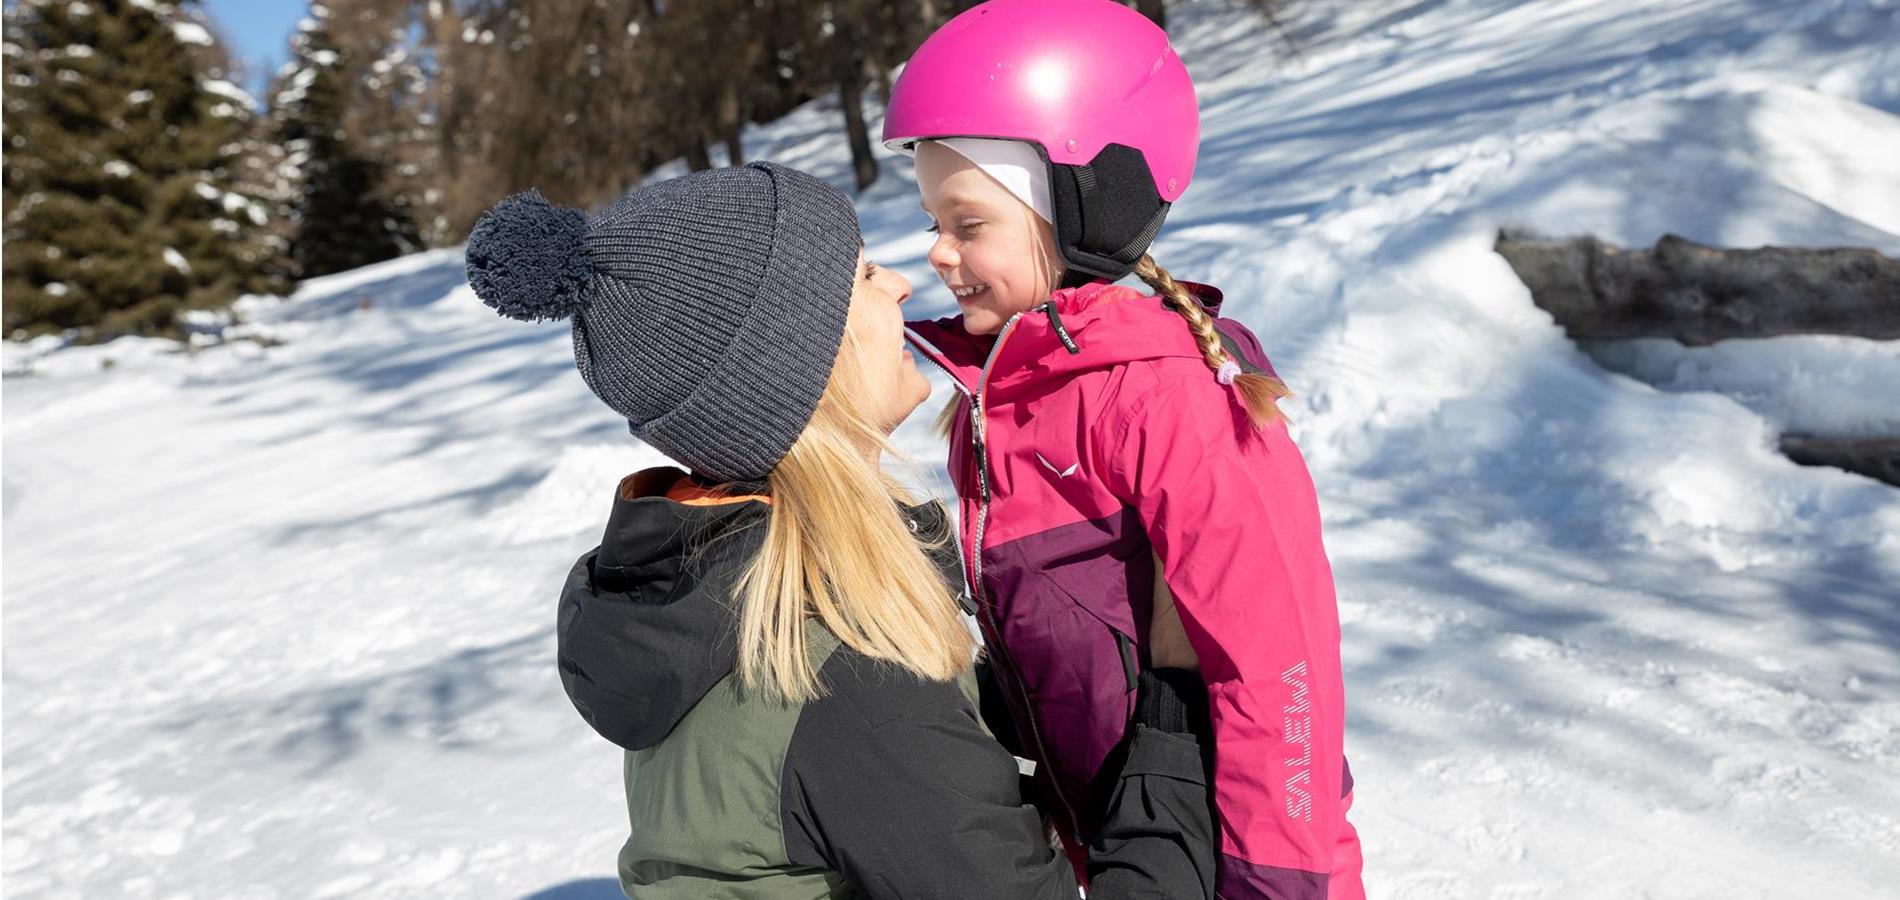 Madre e figlia in inverno a Verano, in Trentino-Alto Adige. Entrambe ridono e si guardano. La bambina ha circa 4 anni e indossa una tuta da sci rosa con un casco rosa.